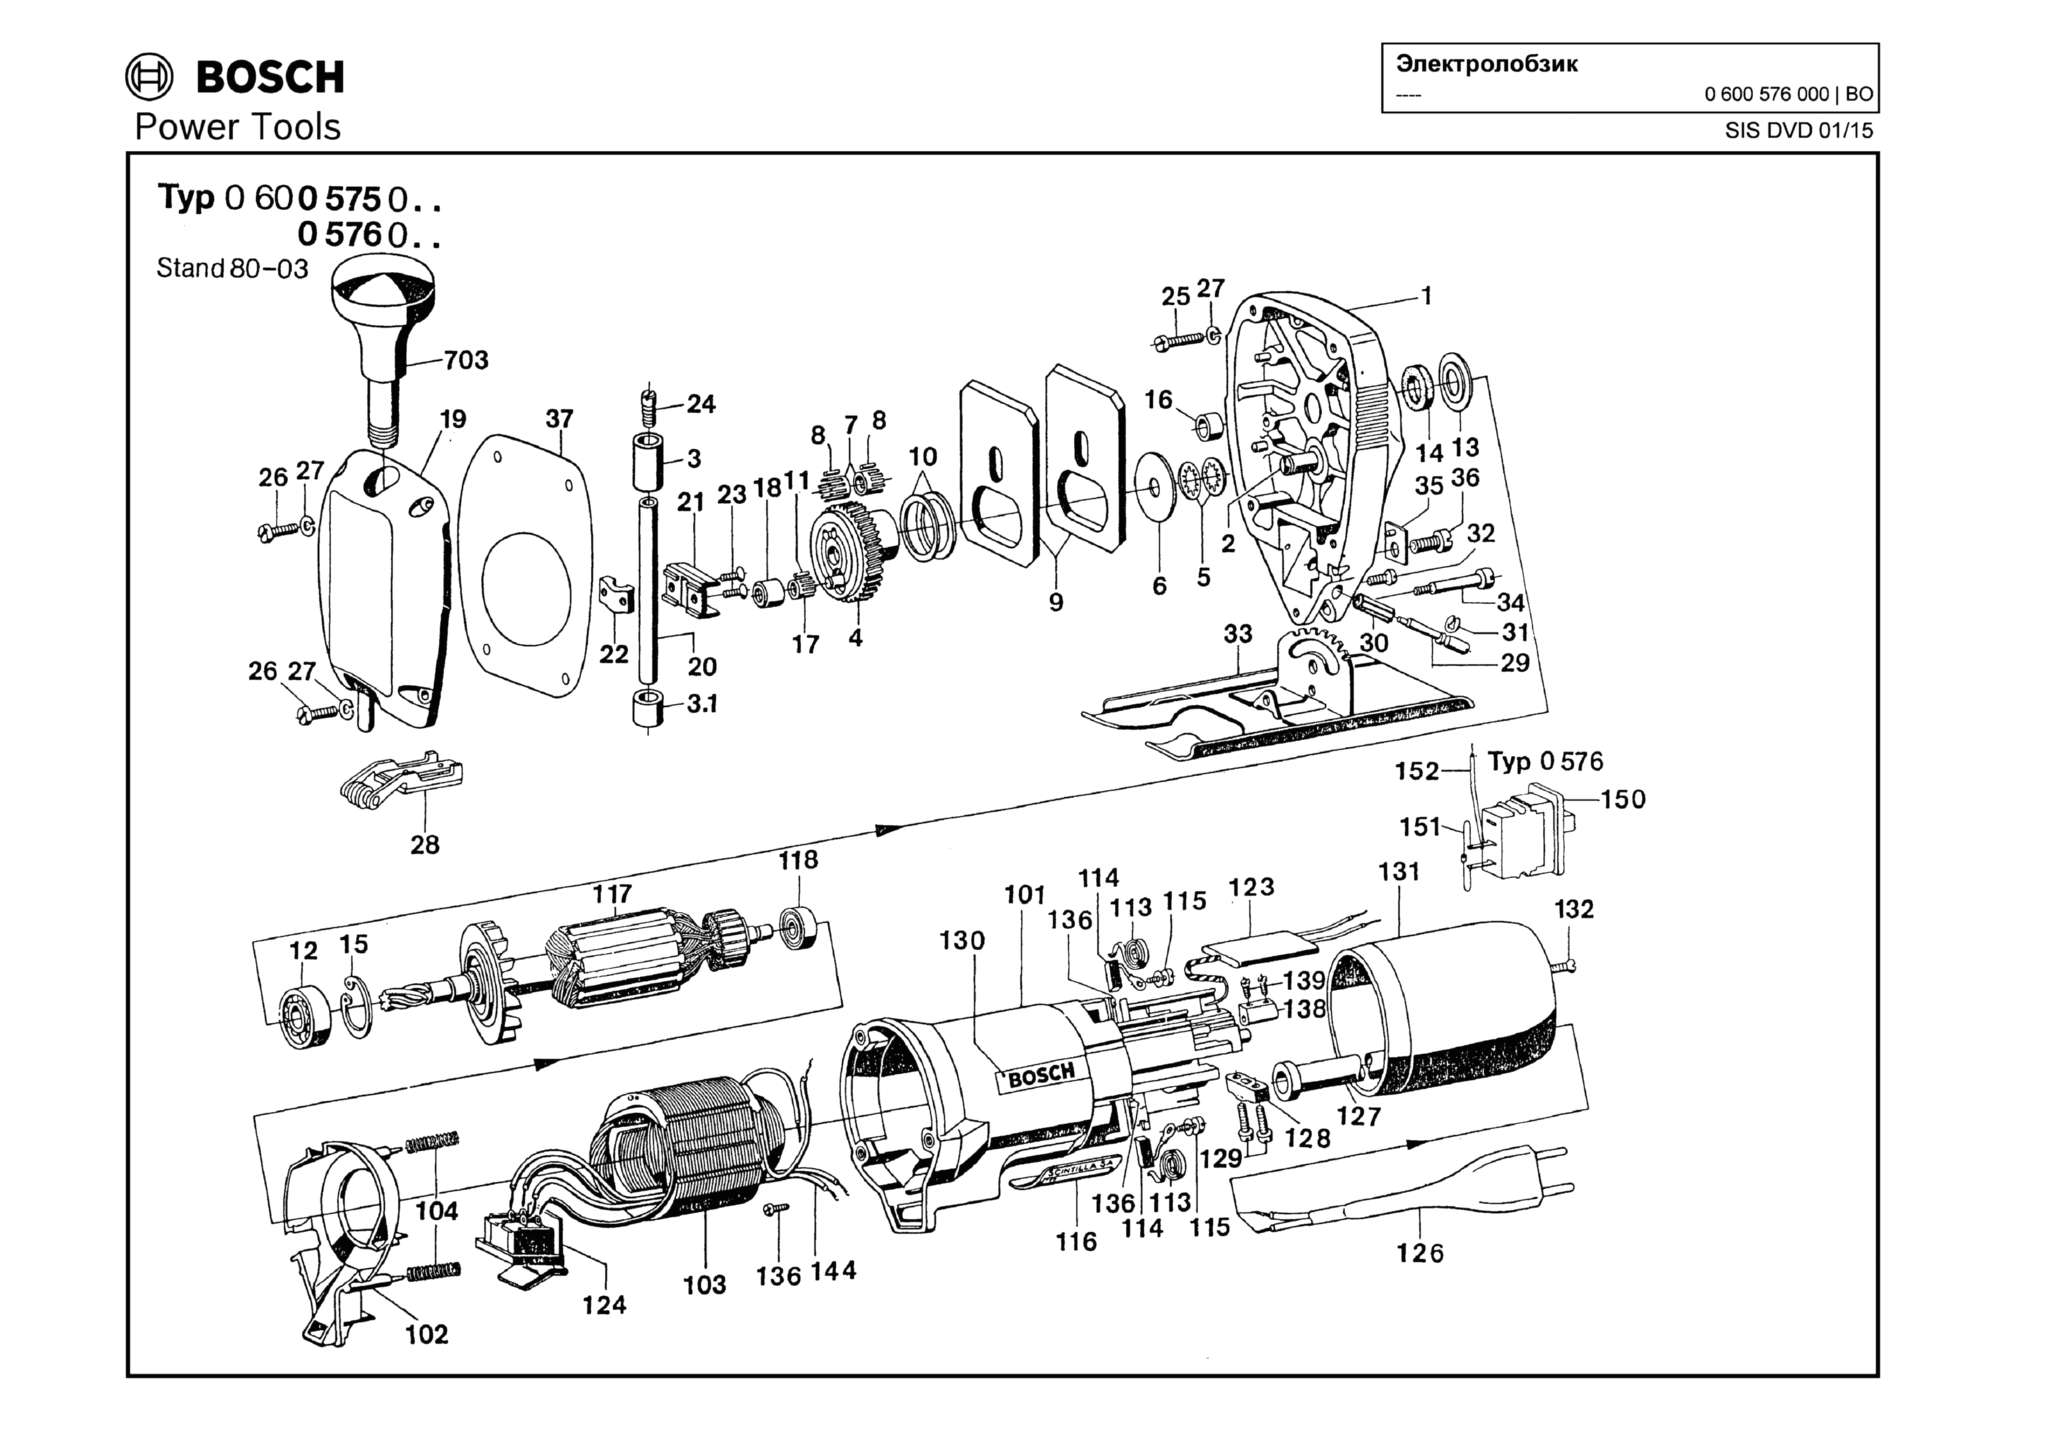 Запчасти, схема и деталировка Bosch (ТИП 0600576000)